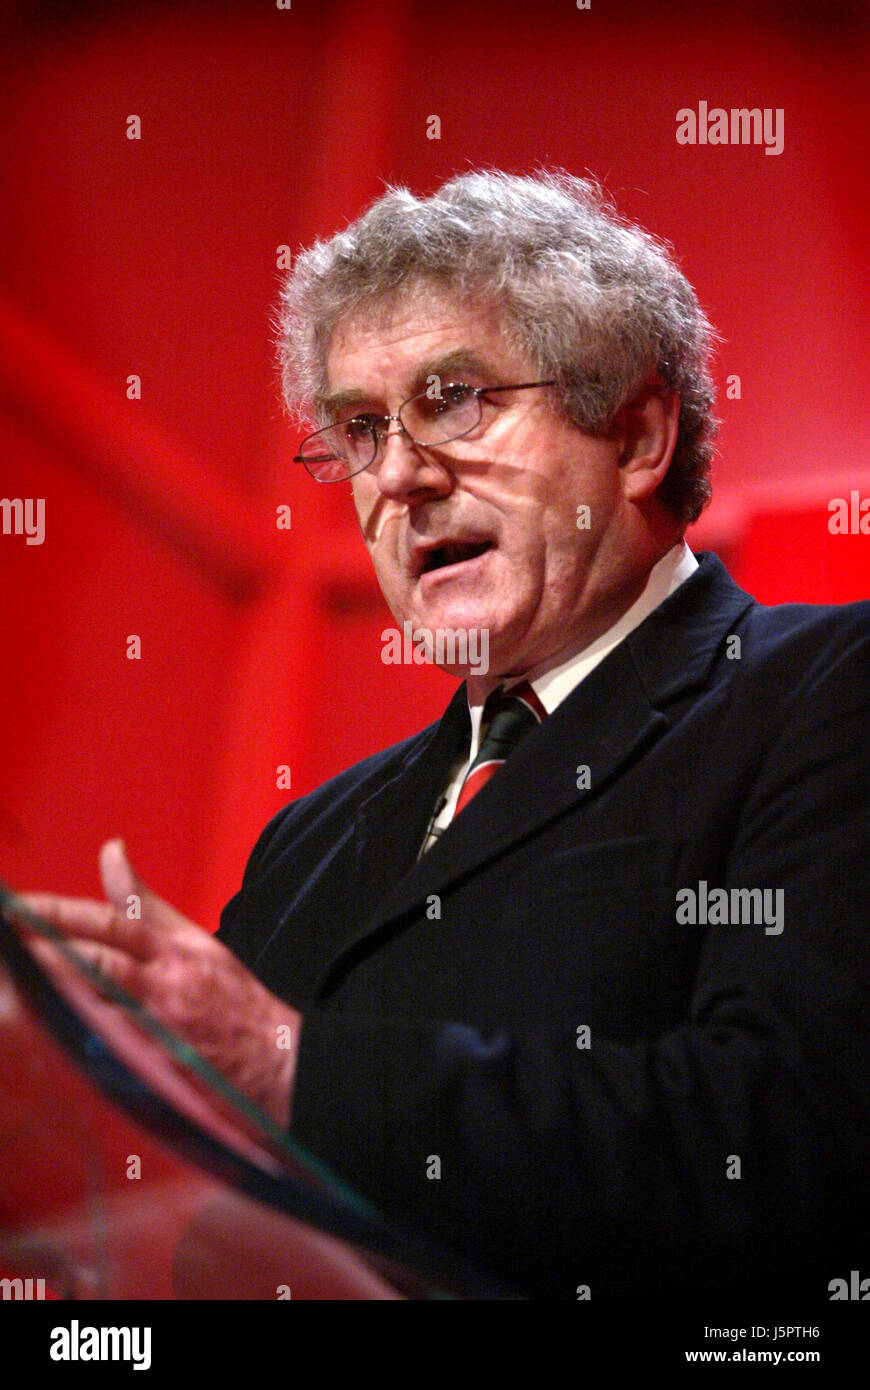 Rhodri Morgan (Labour) der ehemalige Ministerpräsident der walisischen Regierung (2000-2009), anlässlich der Welsh Labour-Parteitag. Er war vor allem als "Vater der Devolution" bekannt. Kiran Ridley/Ethos Stockfoto